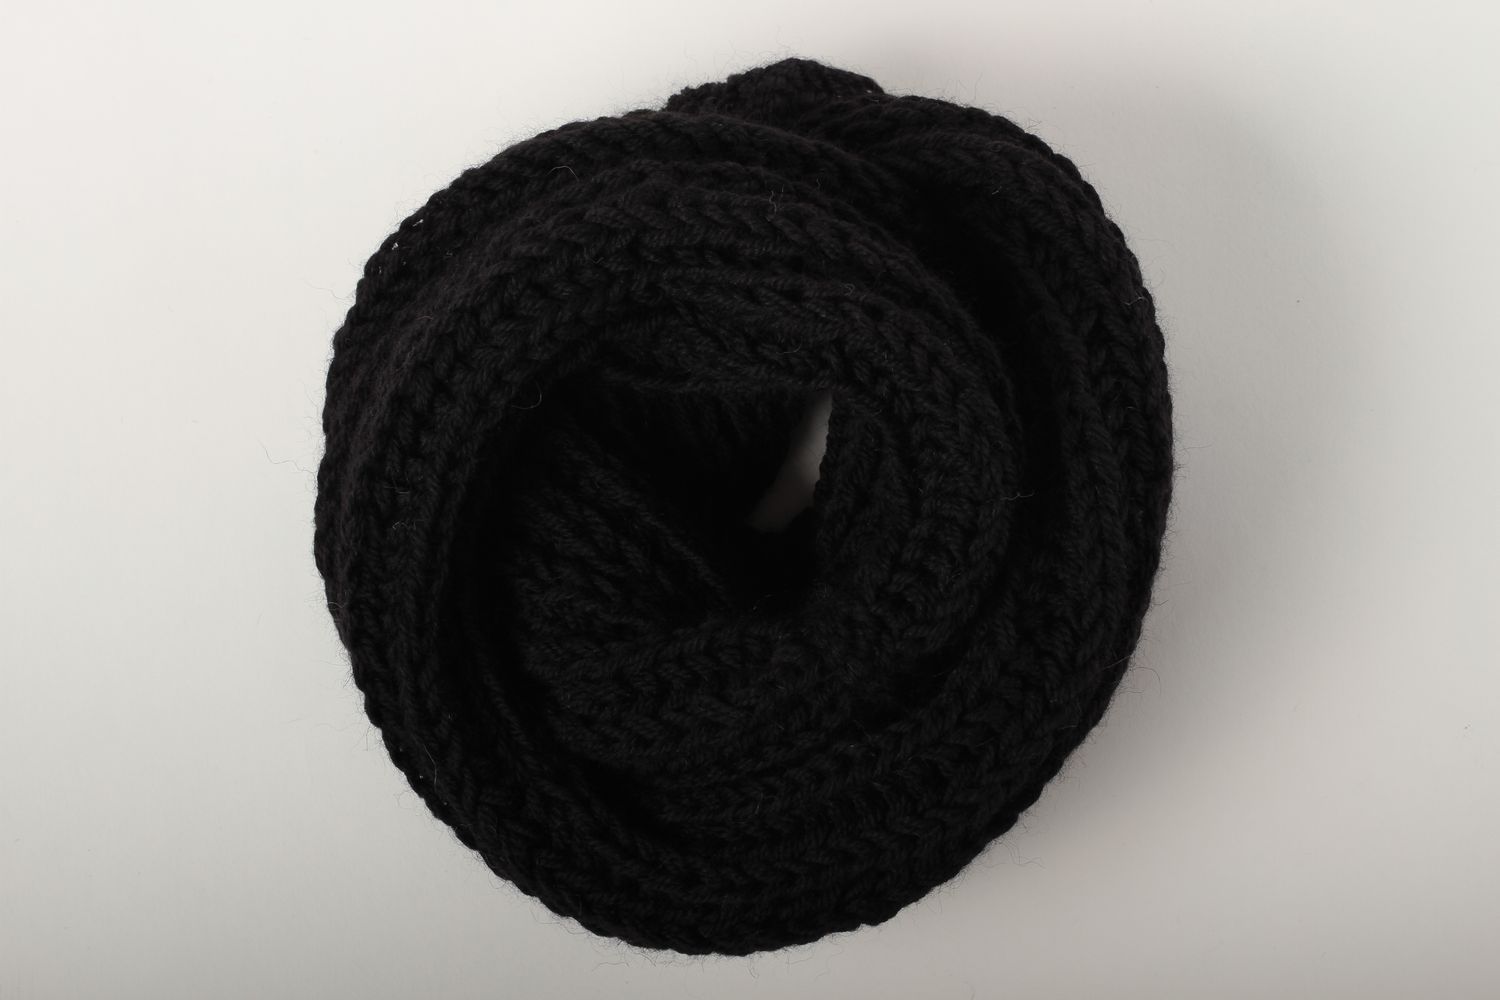 Écharpe noire faite main Vêtement femme en laine chaude d'hiver Idée cadeau photo 5